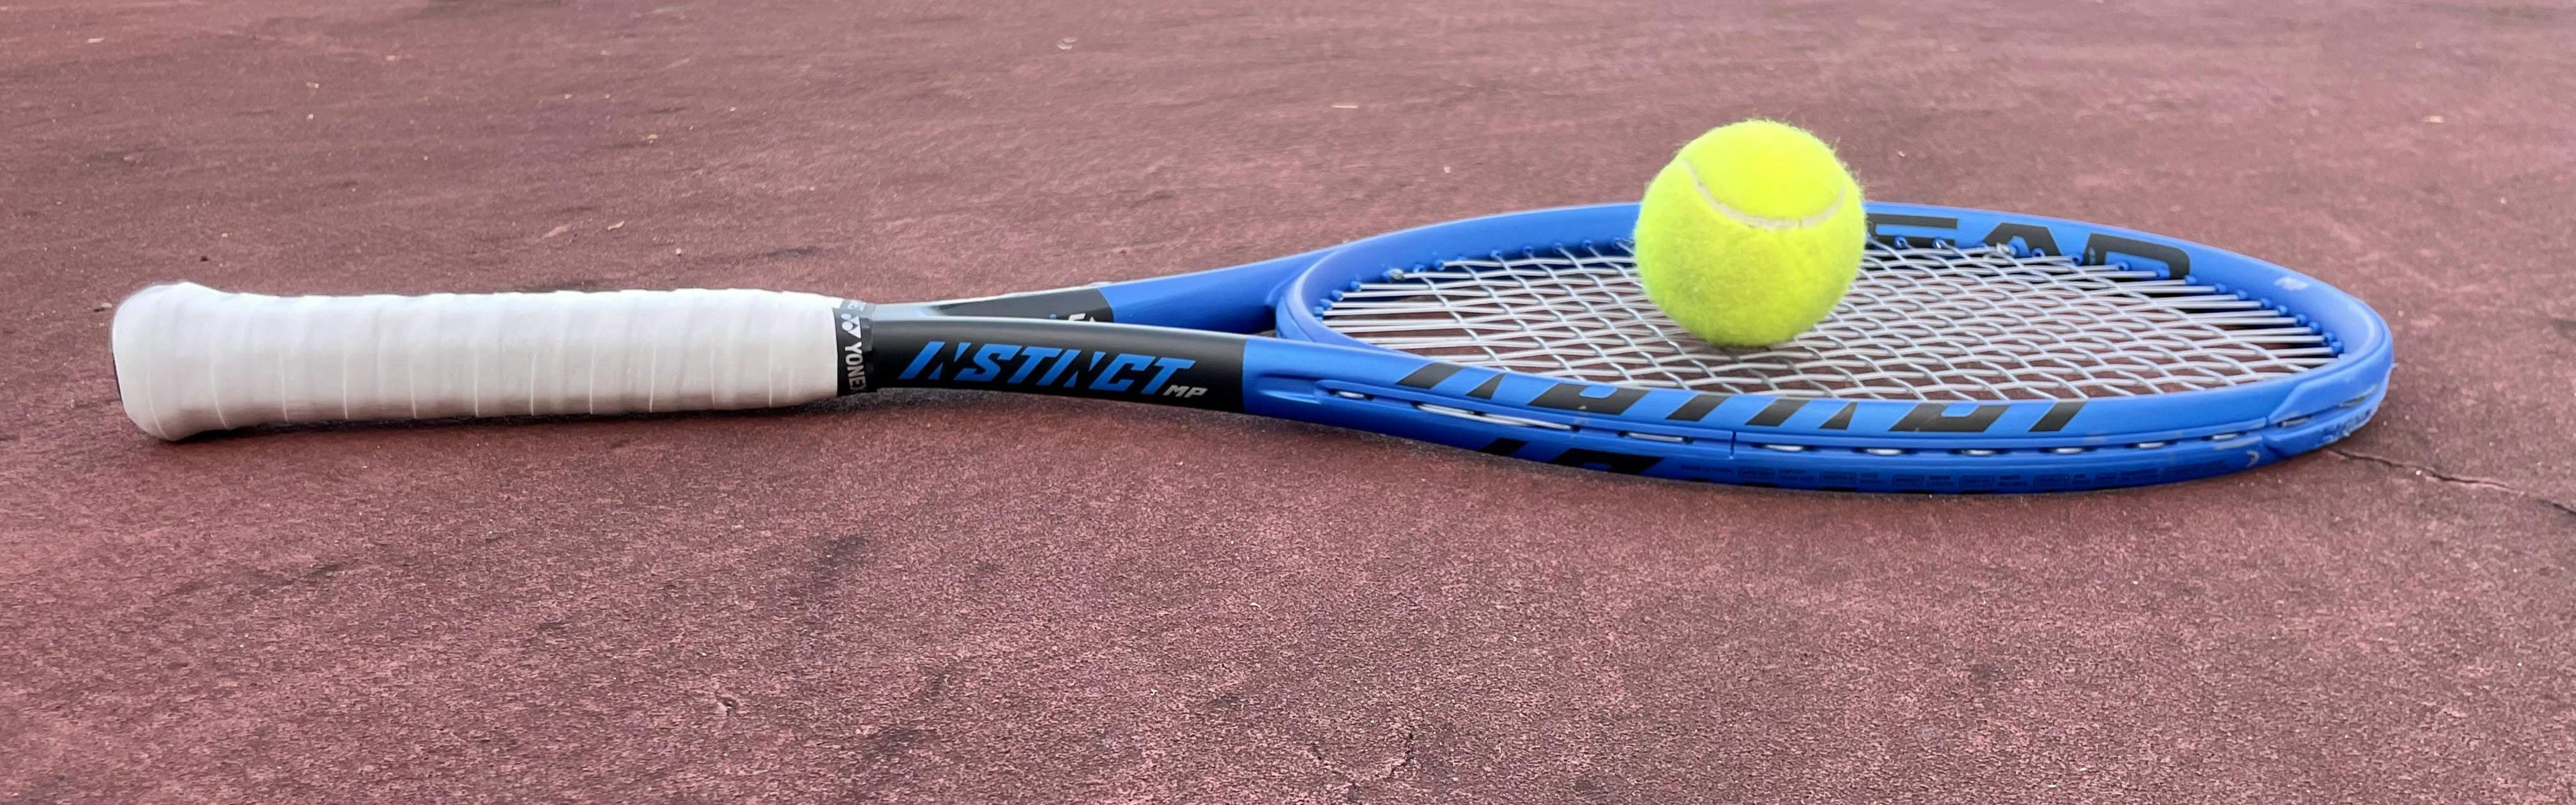 Grip raquette de tennis – Fit Super-Humain